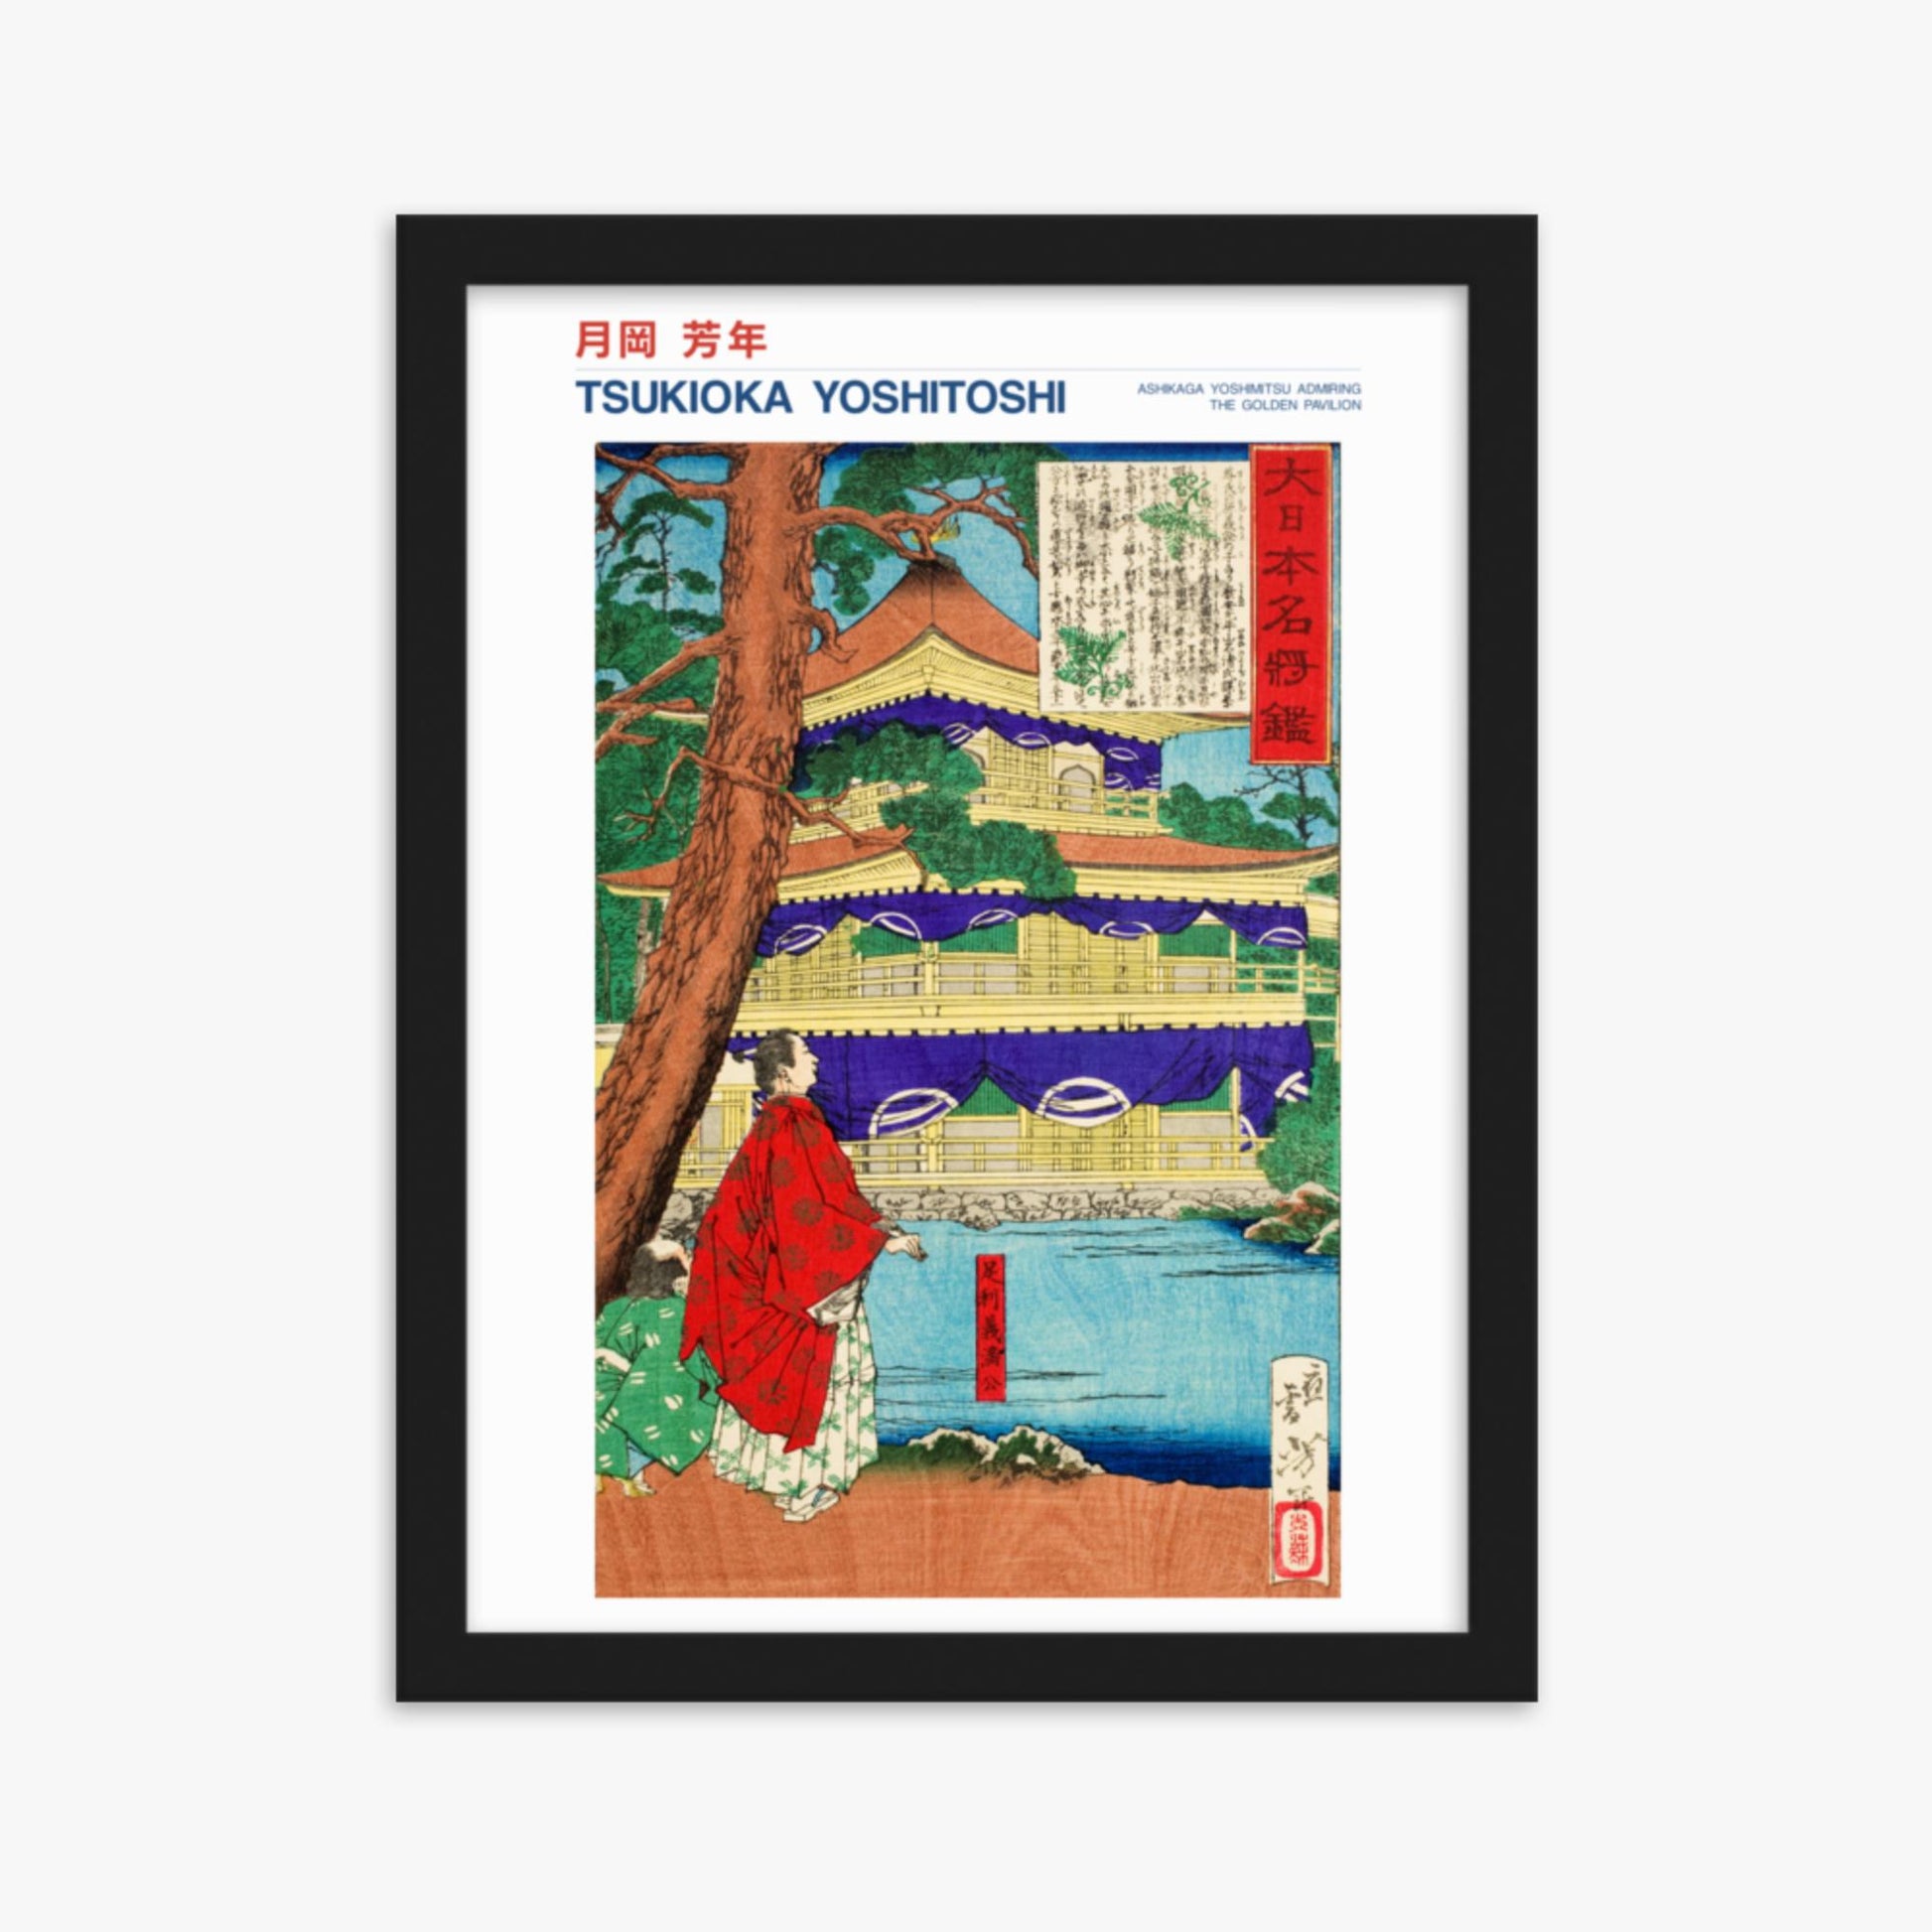 Tsukioka Yoshitoshi - Ashikaga Yoshimitsu admiring the Golden Pavilion - Decoration 30x40 cm Poster With Black Frame